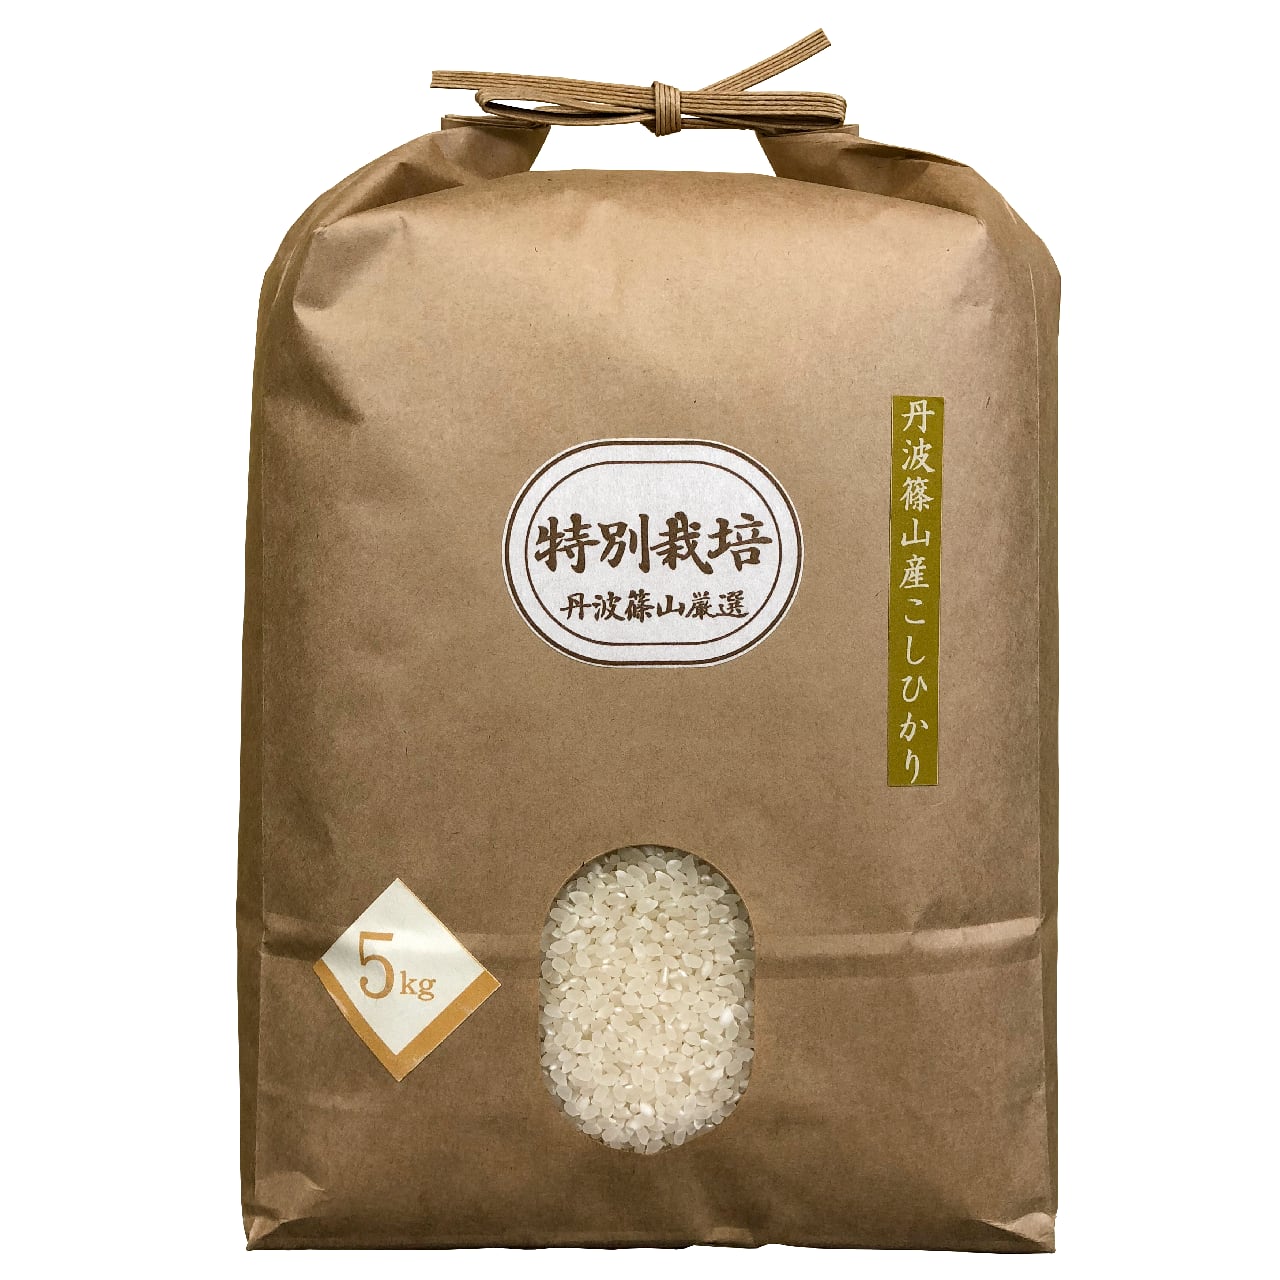 2023年産、信州伊那谷産はさ掛け米10kg 市販 - 米・雑穀・粉類